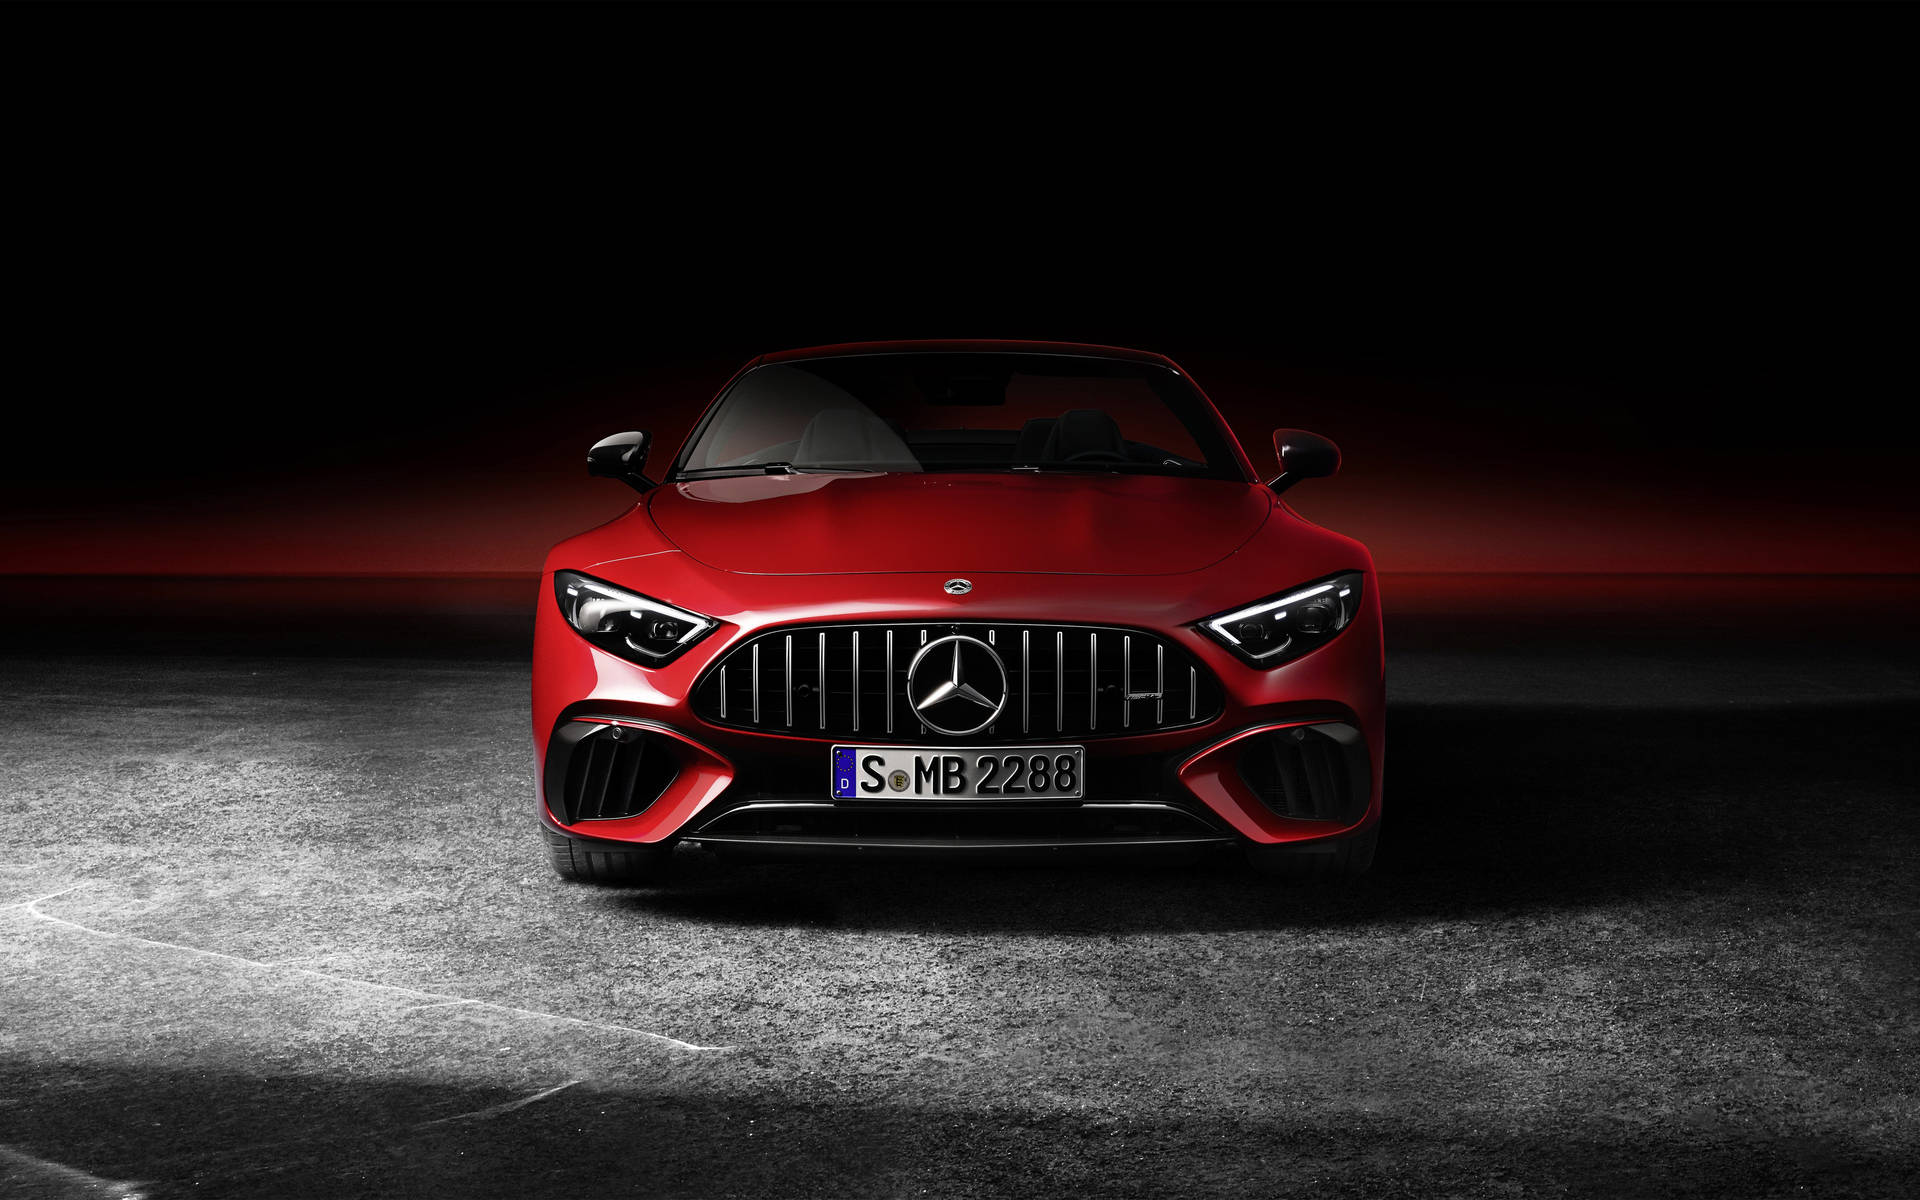 Lấy cảm hứng từ thiết kế sang trọng và đẳng cấp của xe hơi Mercedes, các hình nền Mercedes 4K miễn phí sẽ giúp cho màn hình của bạn trở nên hoàn hảo hơn bao giờ hết. Chất lượng hình ảnh cao sẽ khiến cho bạn chìm đắm trong thế giới đẹp nhất.